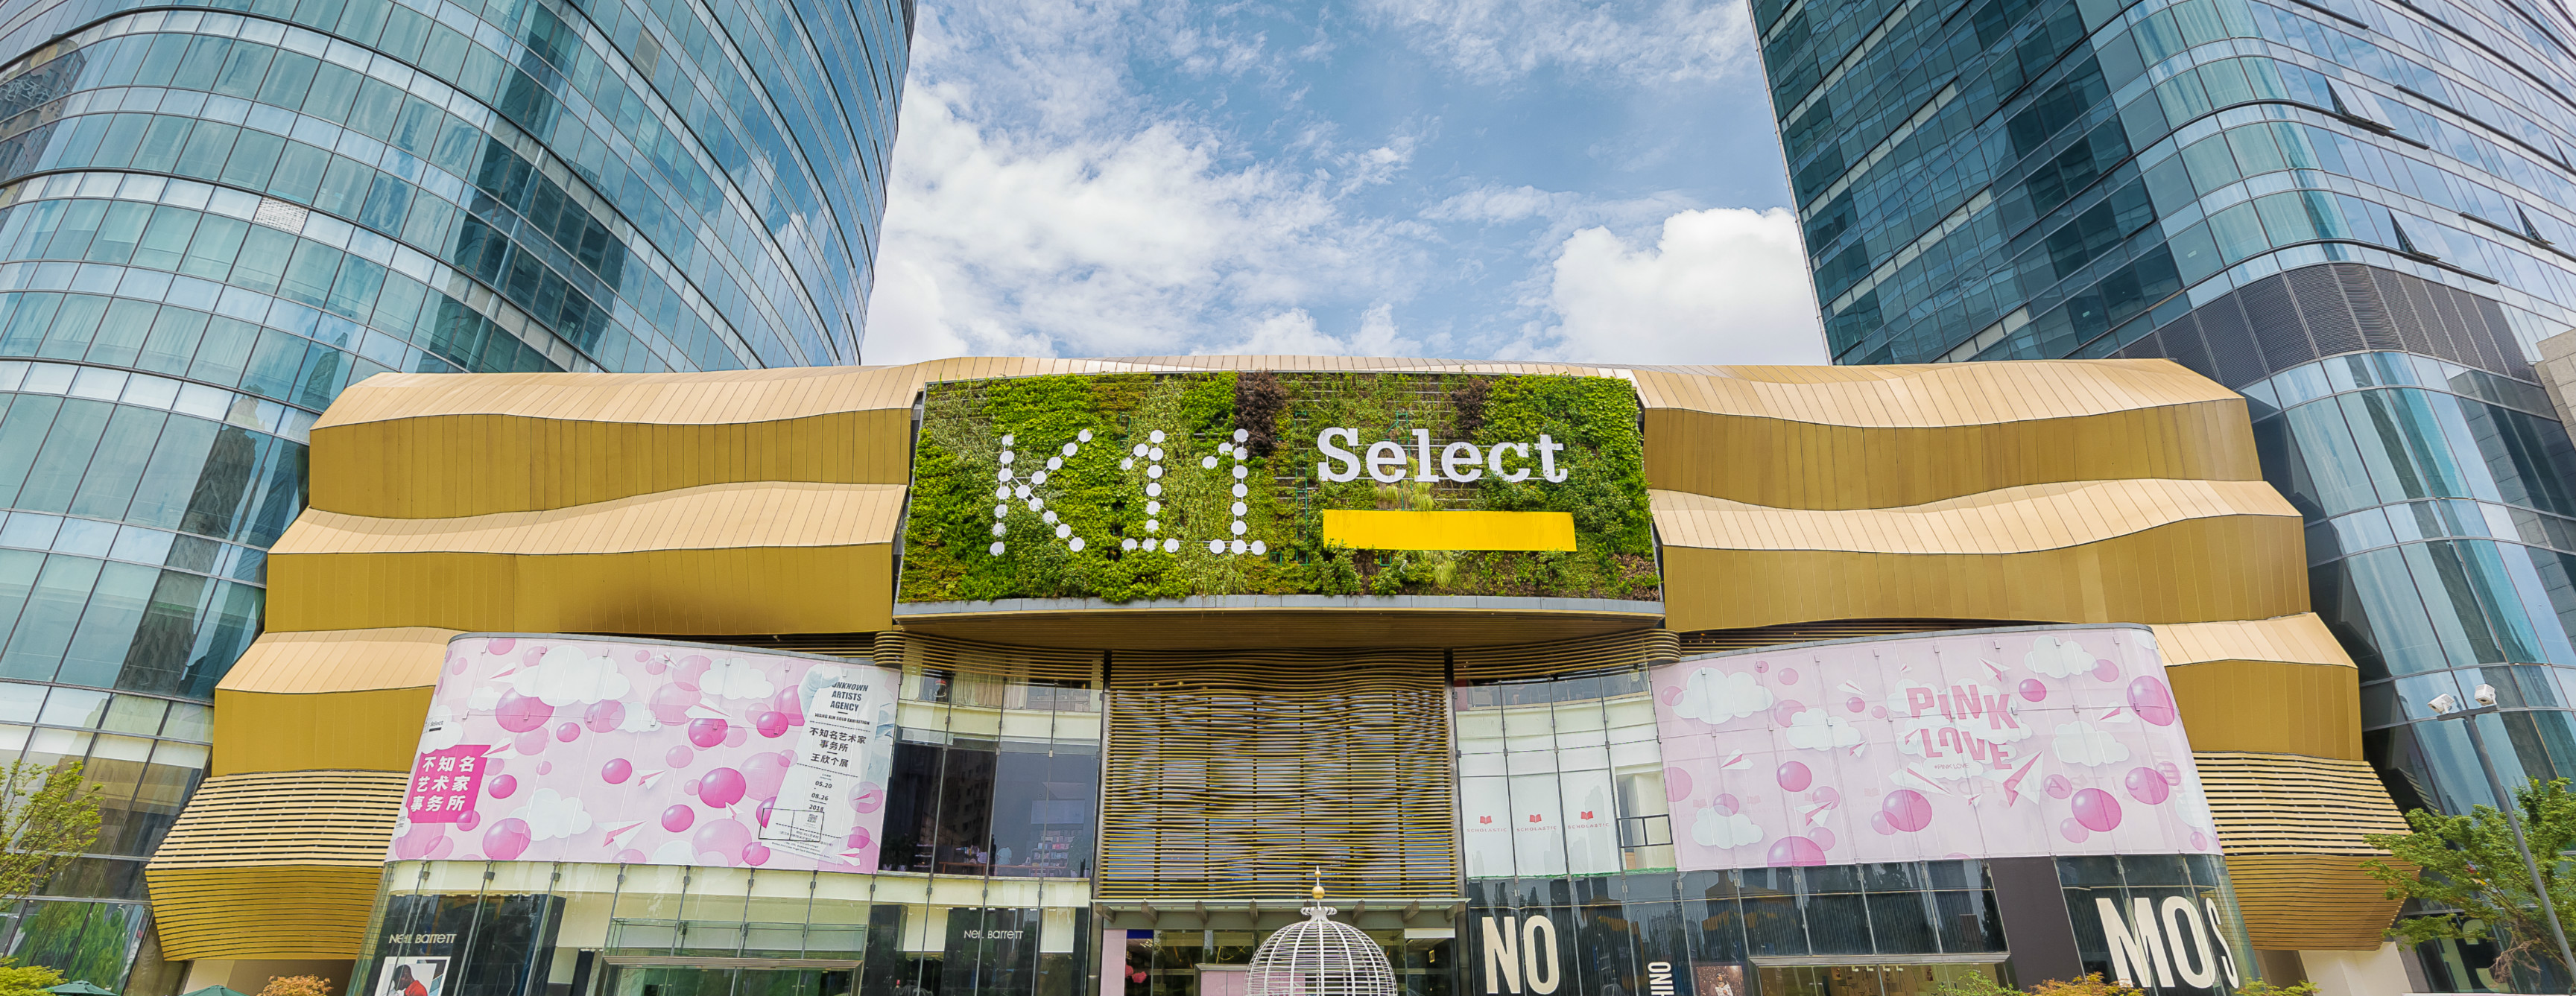 武汉明年最值得期待的购物中心:武汉k11大量效果图及全面解析送上!